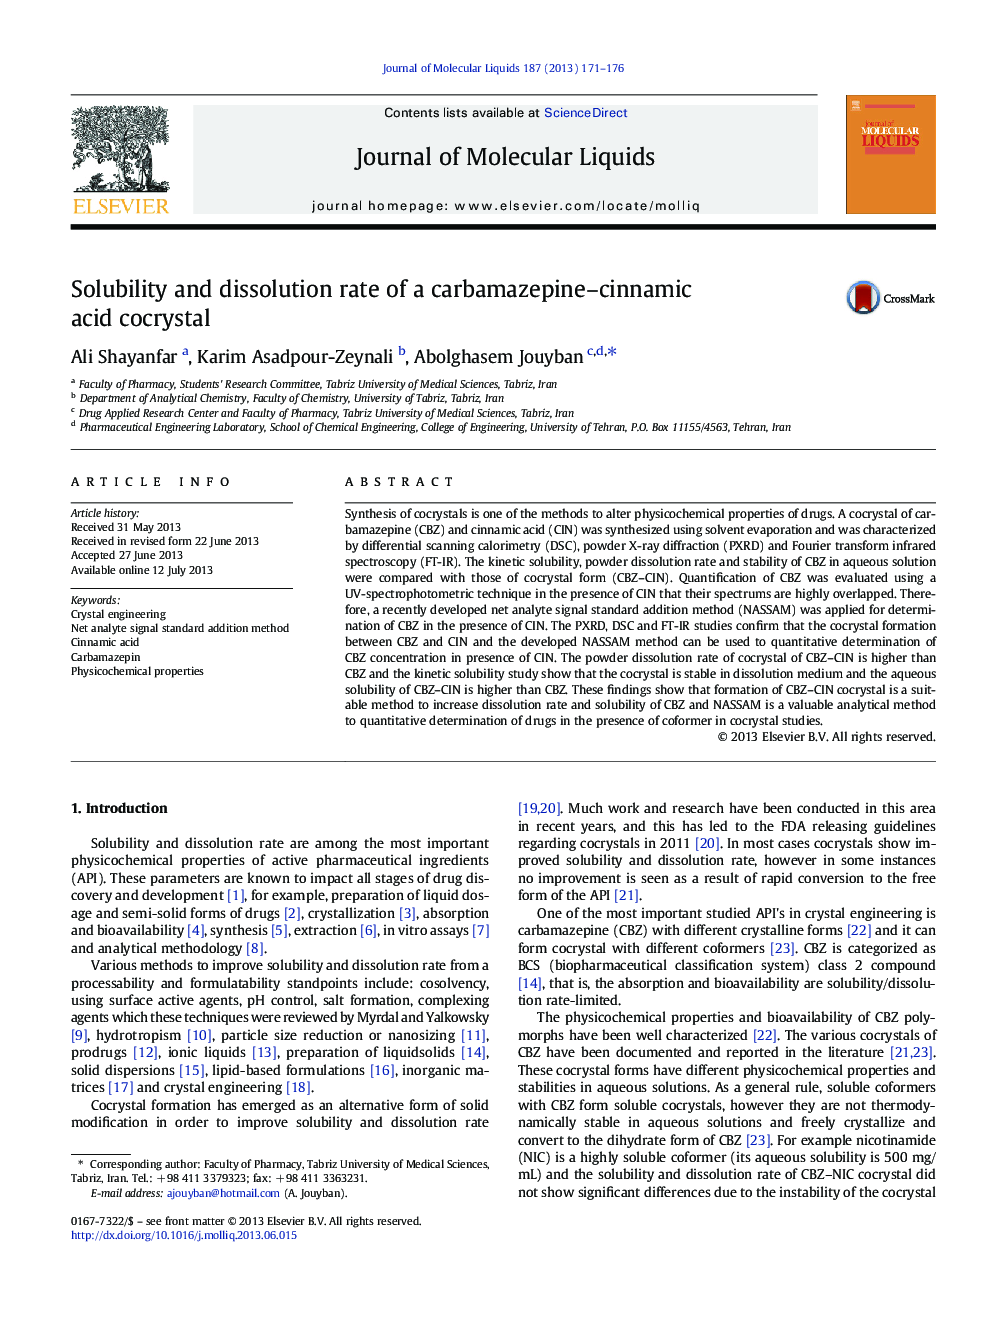 میزان حلالیت و انحلال یک کرومبوسر اسید کاربامازپین-کینمیک اسید 